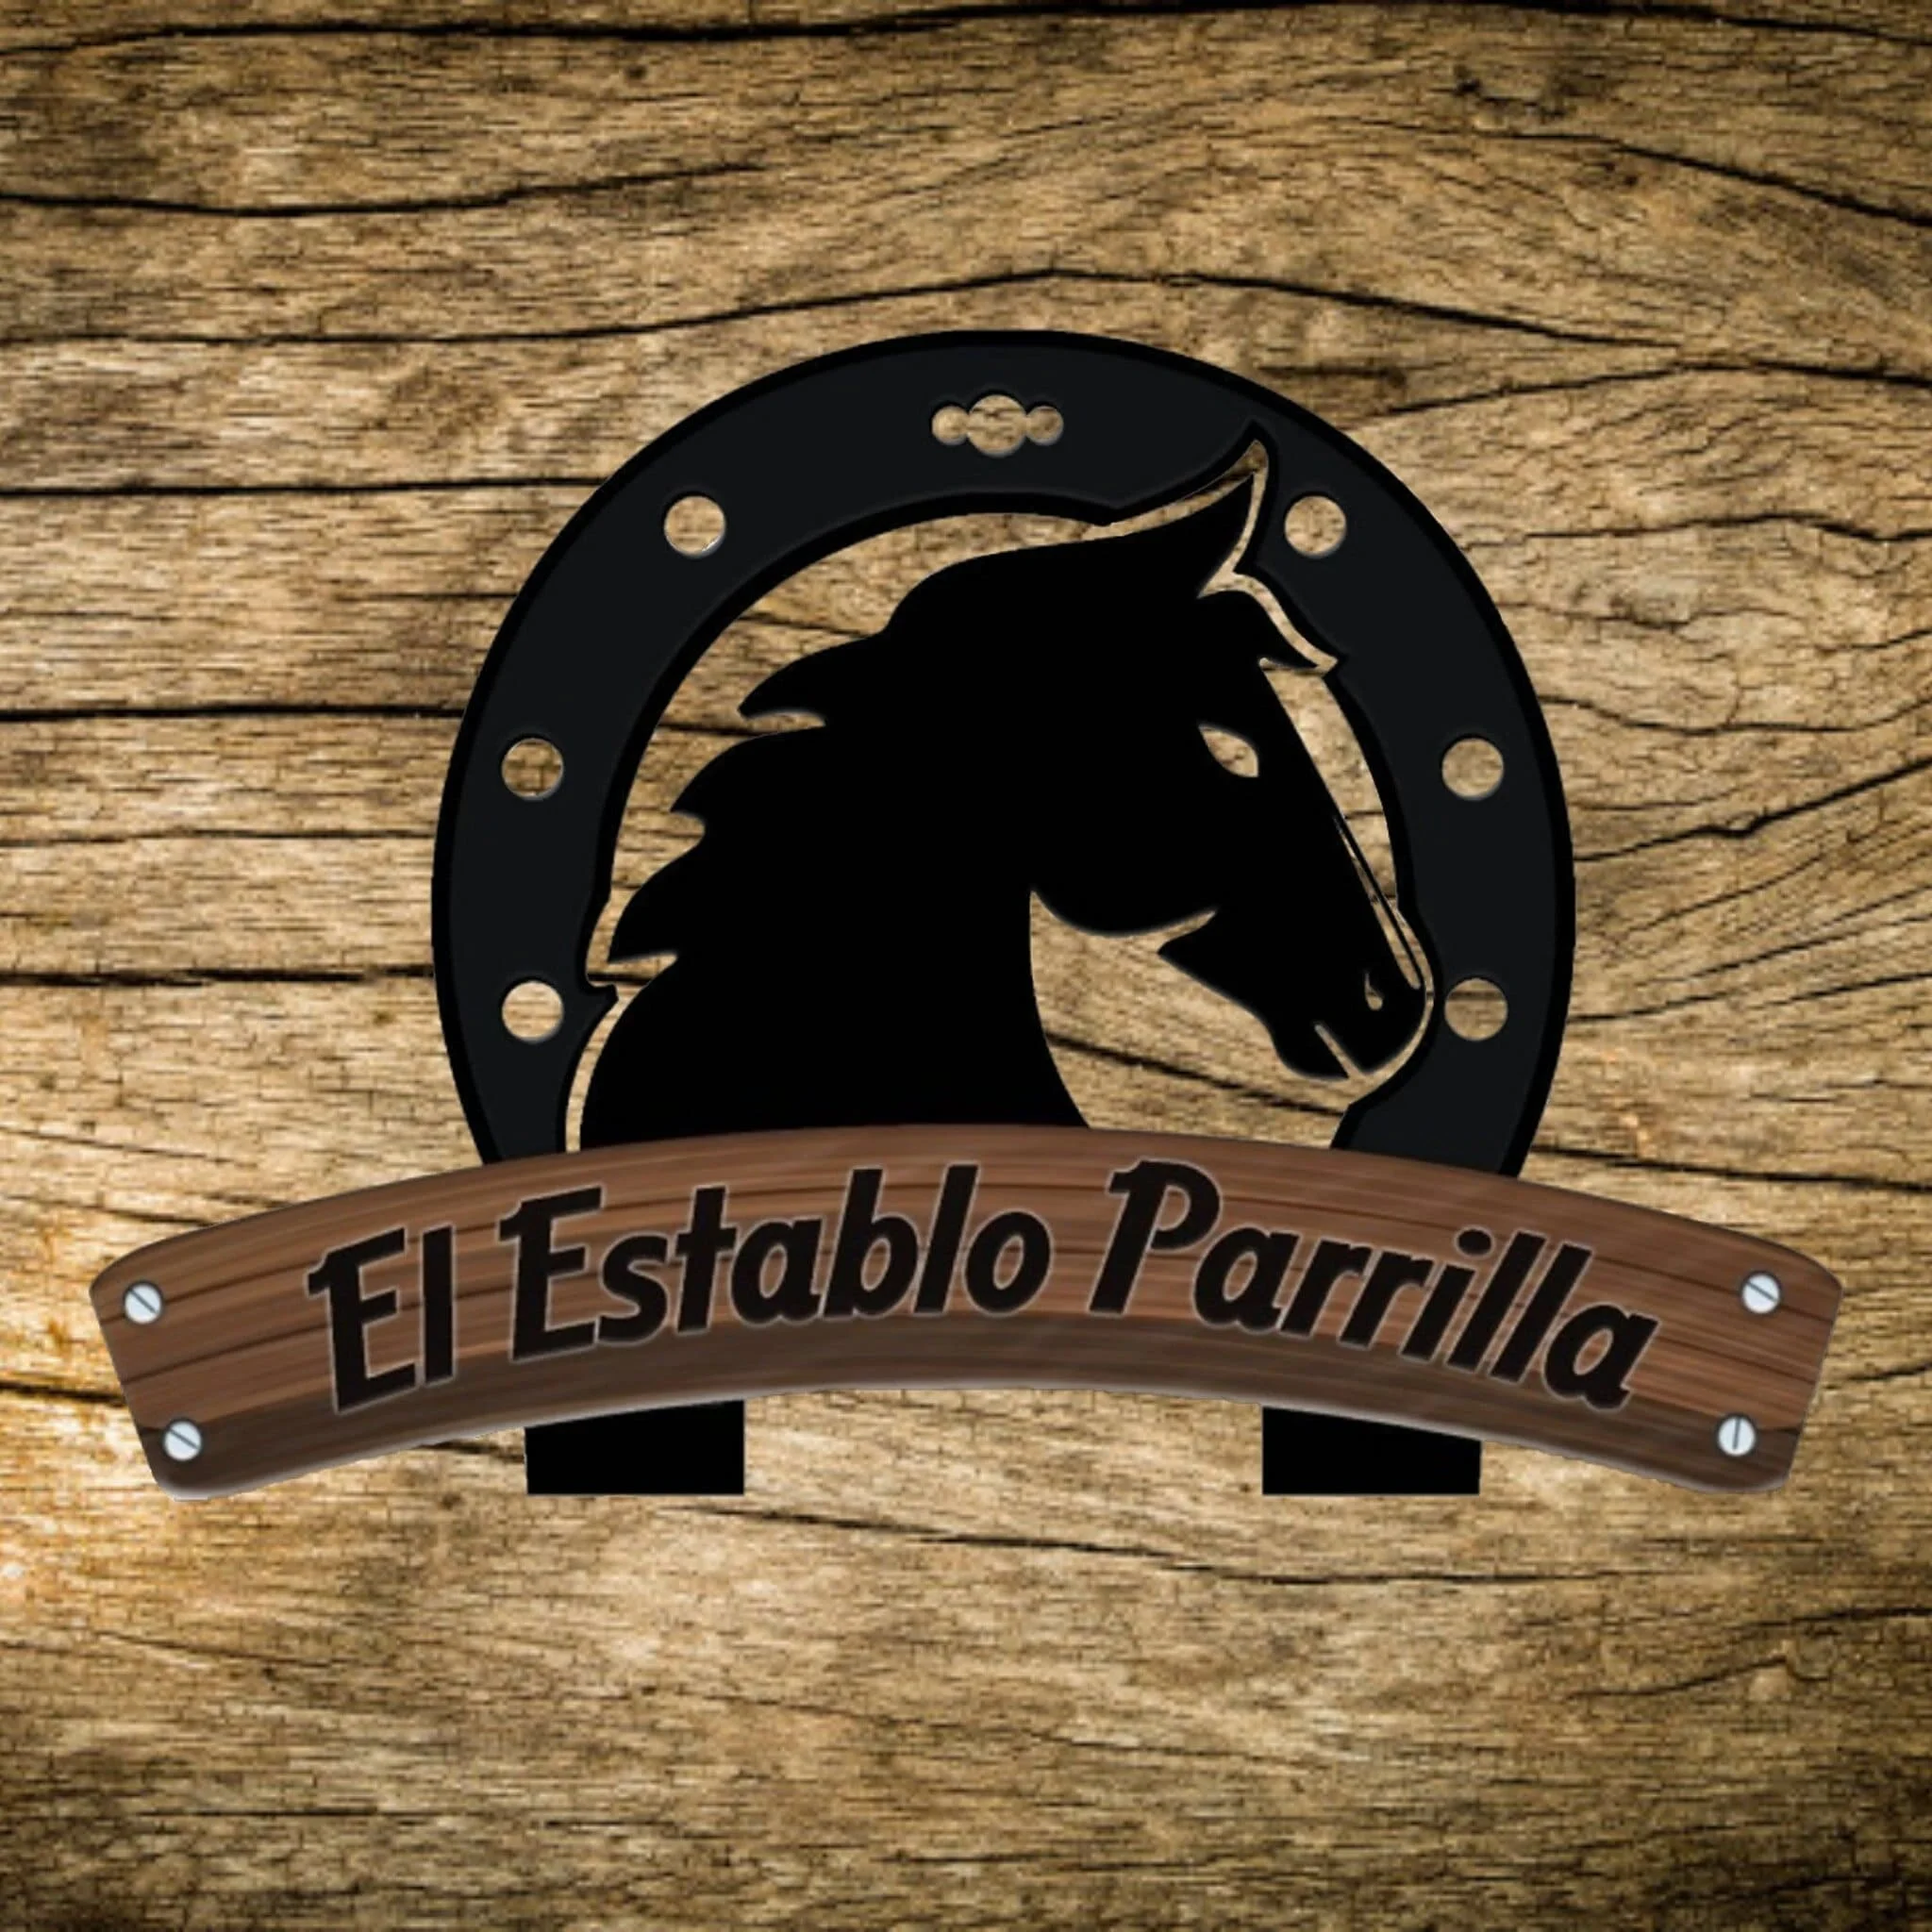 Restaurante-restaurante-el-establo-parrilla-26177